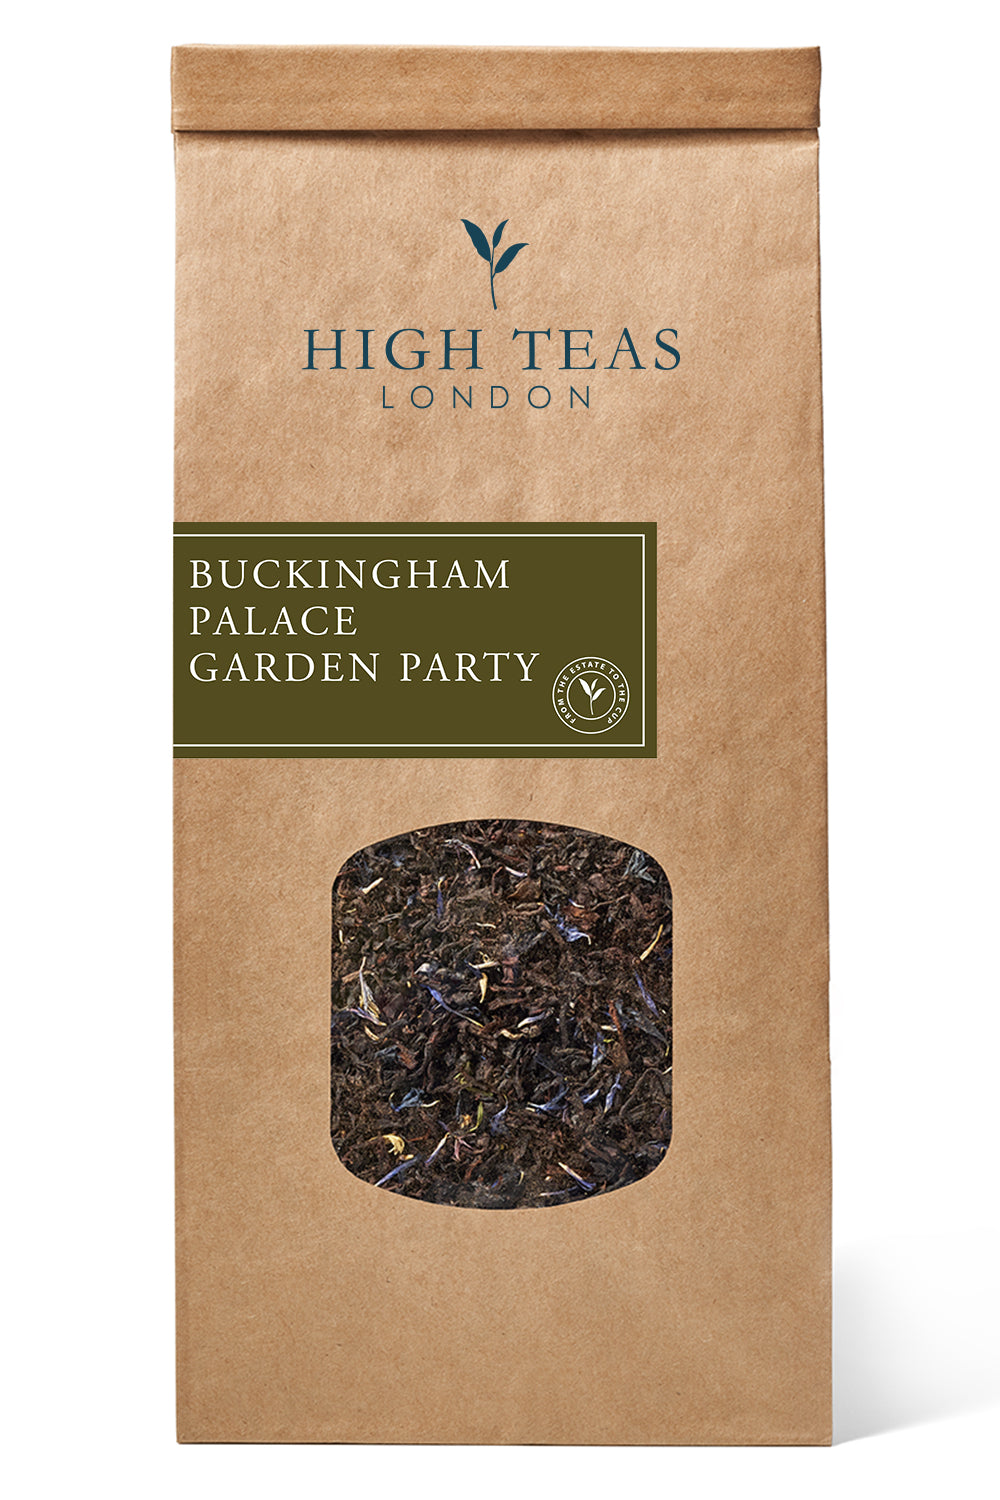 Buckingham Palace Garden Party-250g-Loose Leaf Tea-High Teas